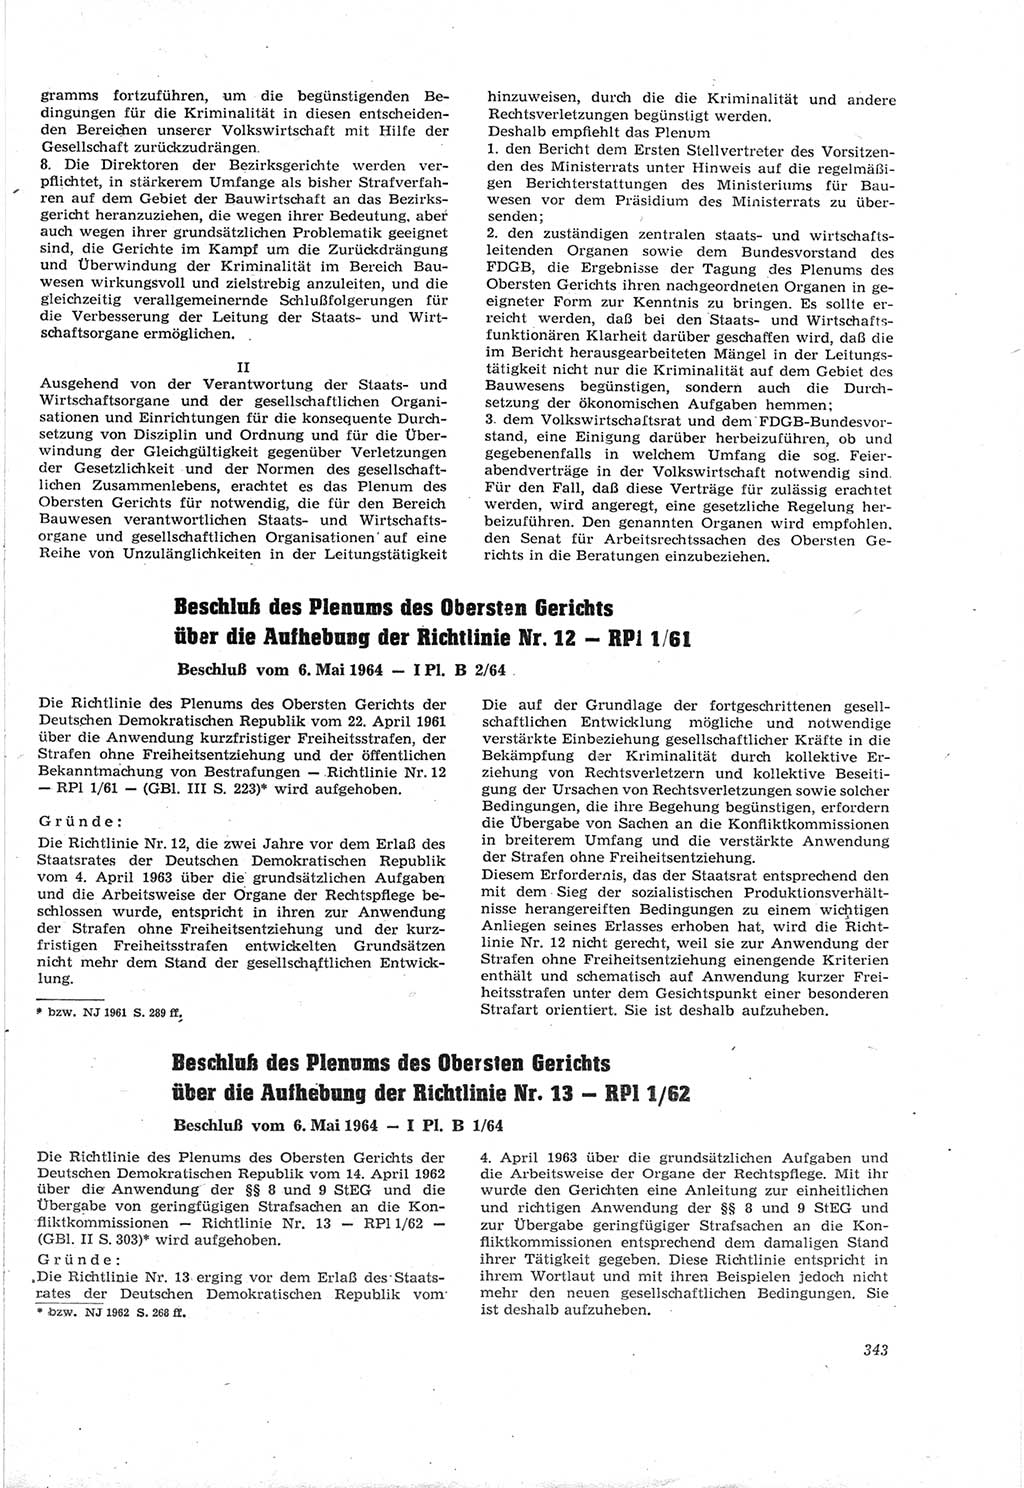 Neue Justiz (NJ), Zeitschrift für Recht und Rechtswissenschaft [Deutsche Demokratische Republik (DDR)], 18. Jahrgang 1964, Seite 343 (NJ DDR 1964, S. 343)